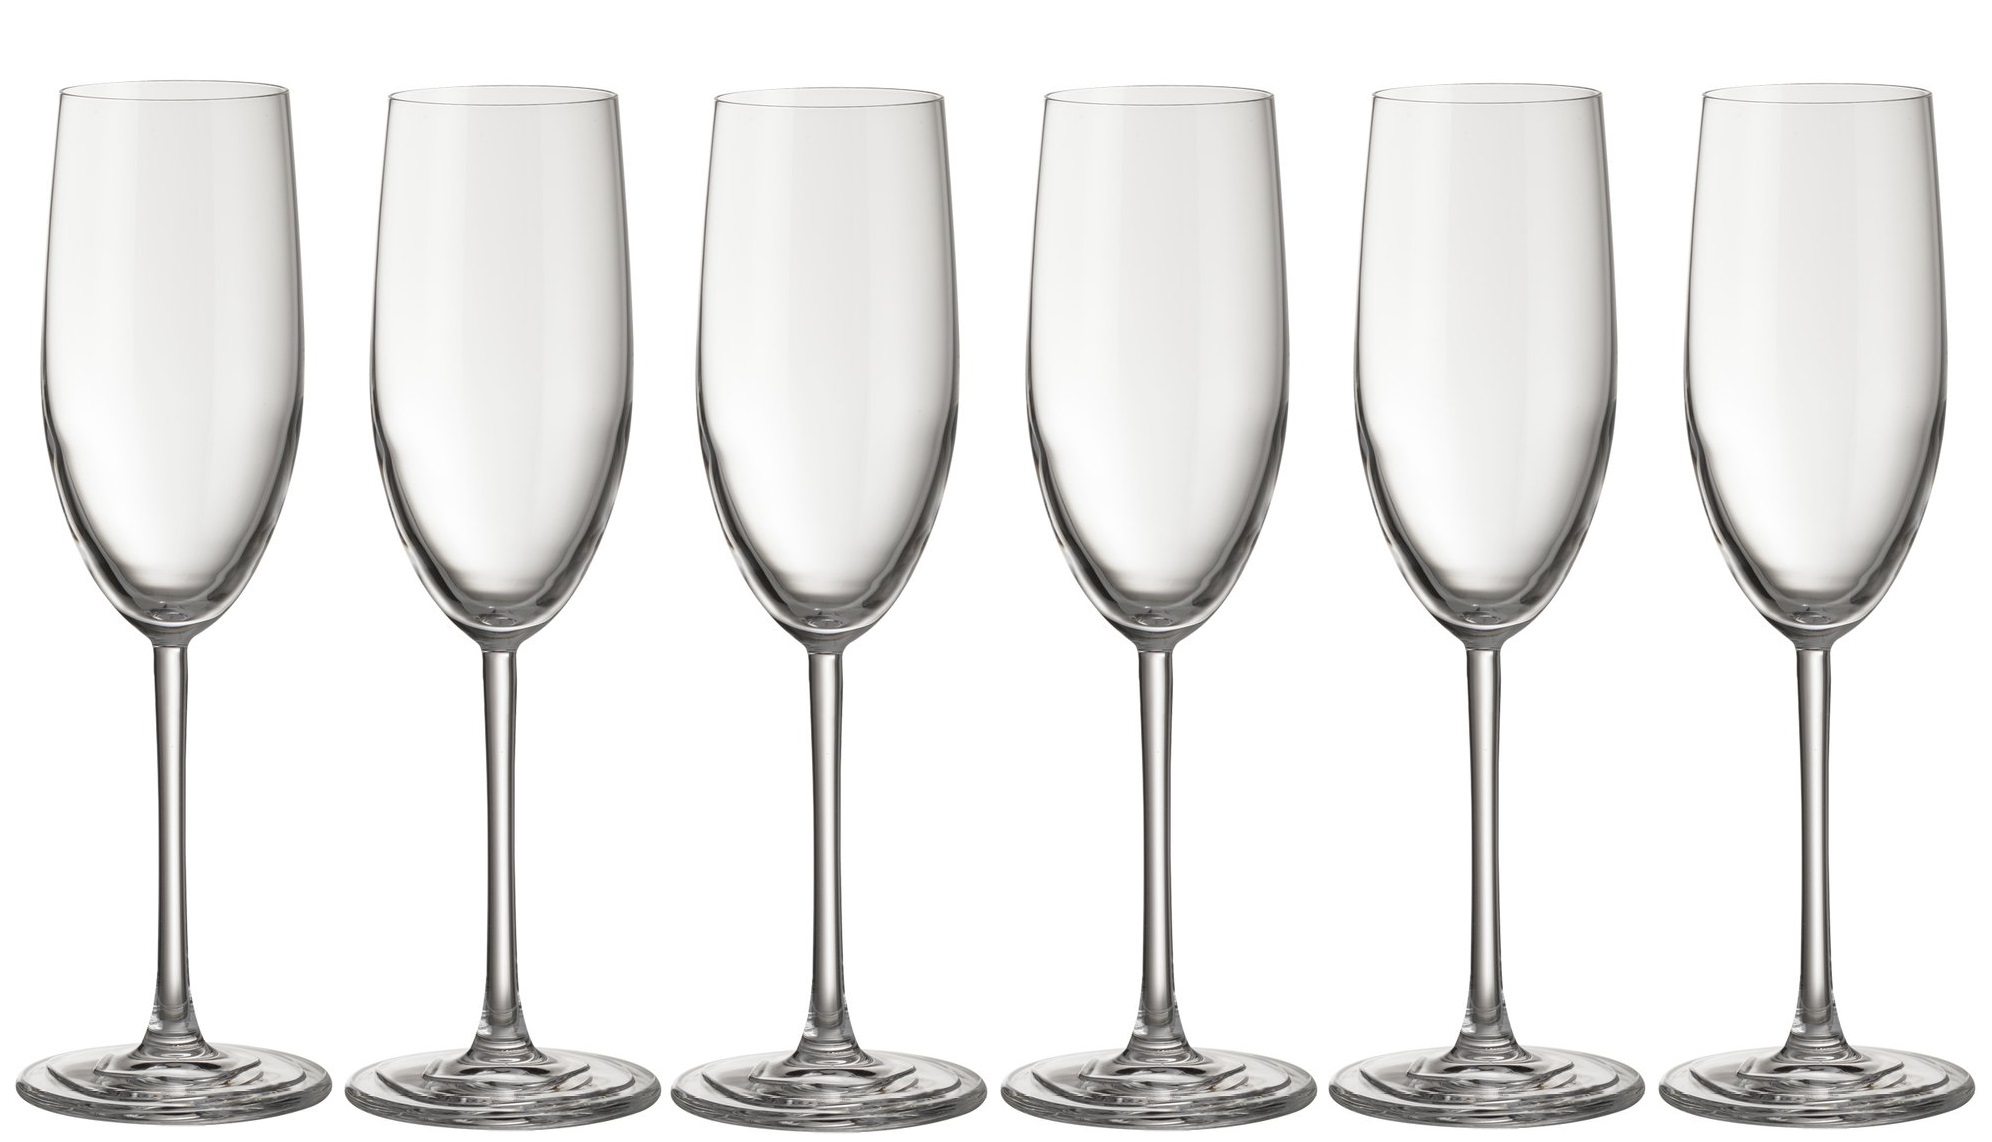 Jamie Oliver "WAVES" Kristall Champagner-Gläser / Sekt-Gläser, 6er Set Sektglas Champagner Glas